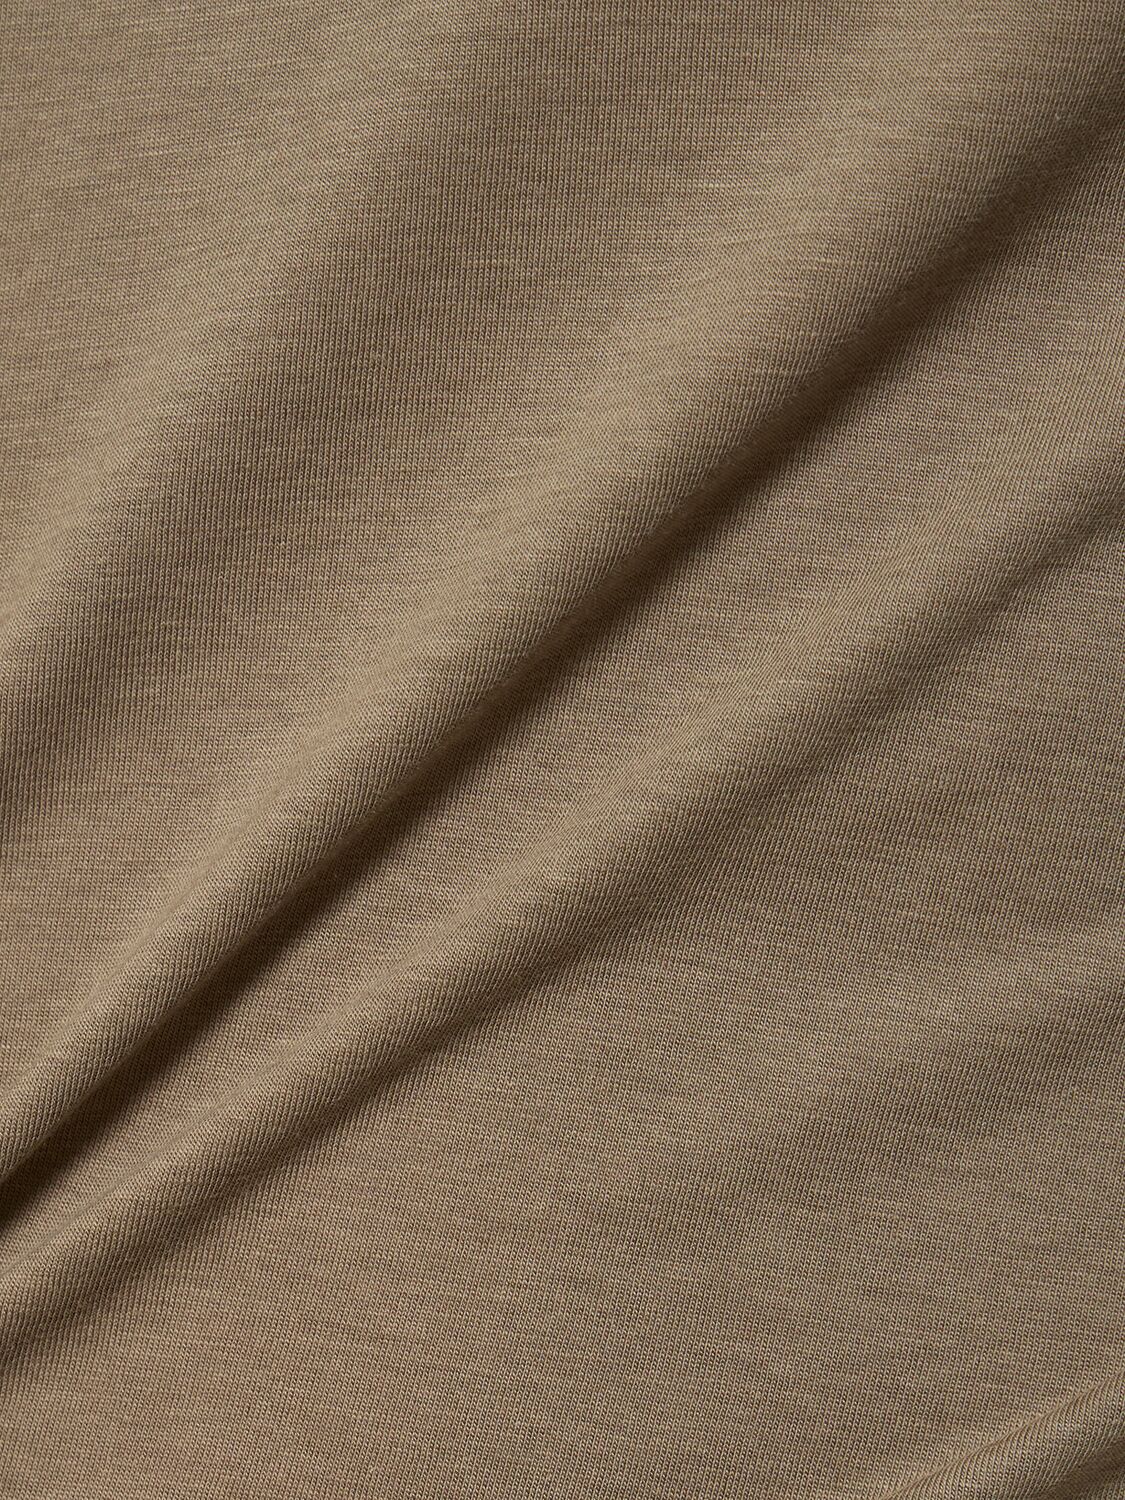 莱赛尔纤维&棉短袖圆领T恤